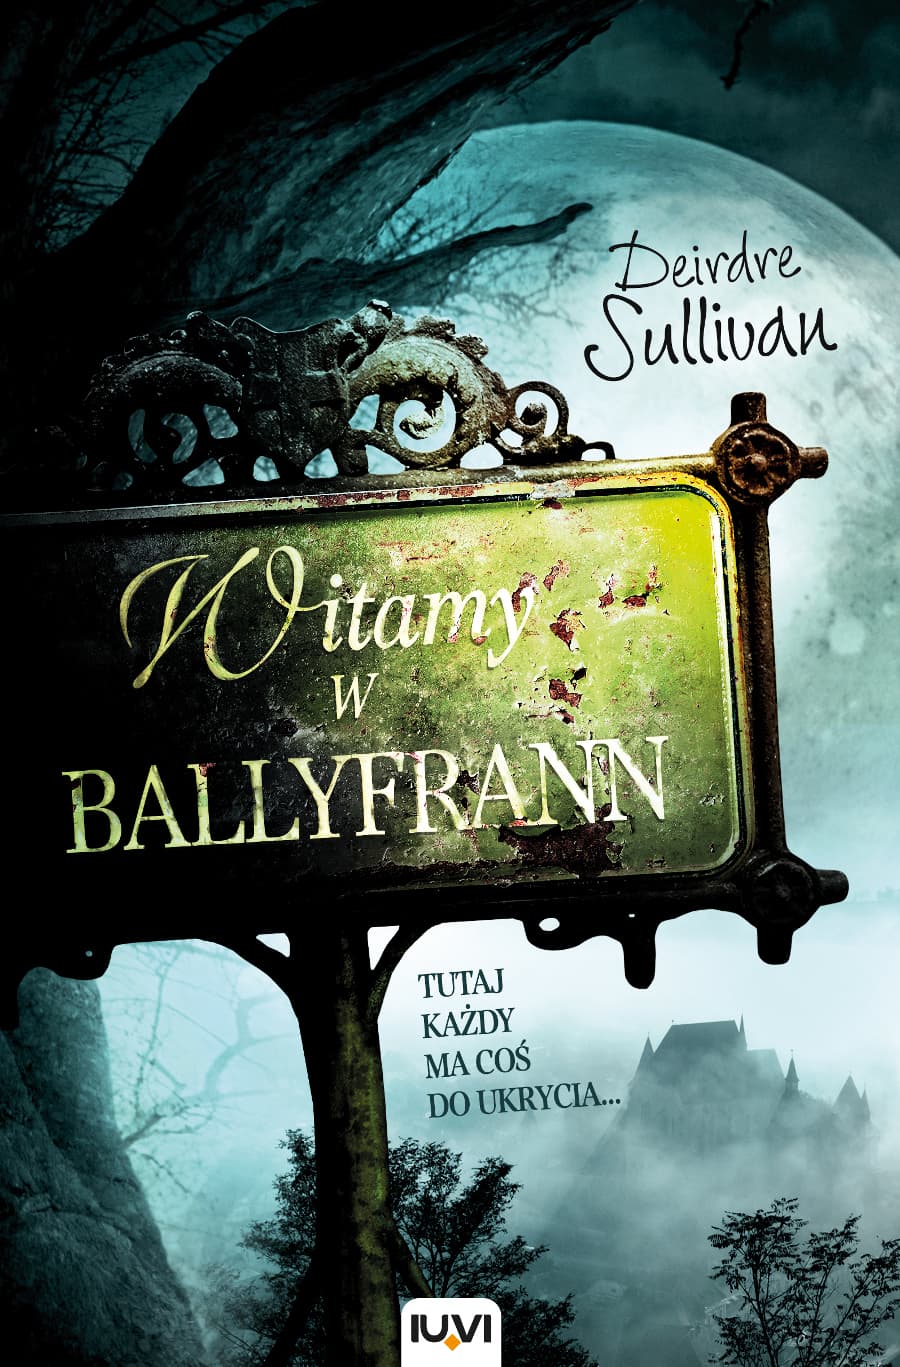  Deirdre Sullivan - Witamy w Ballyfrann